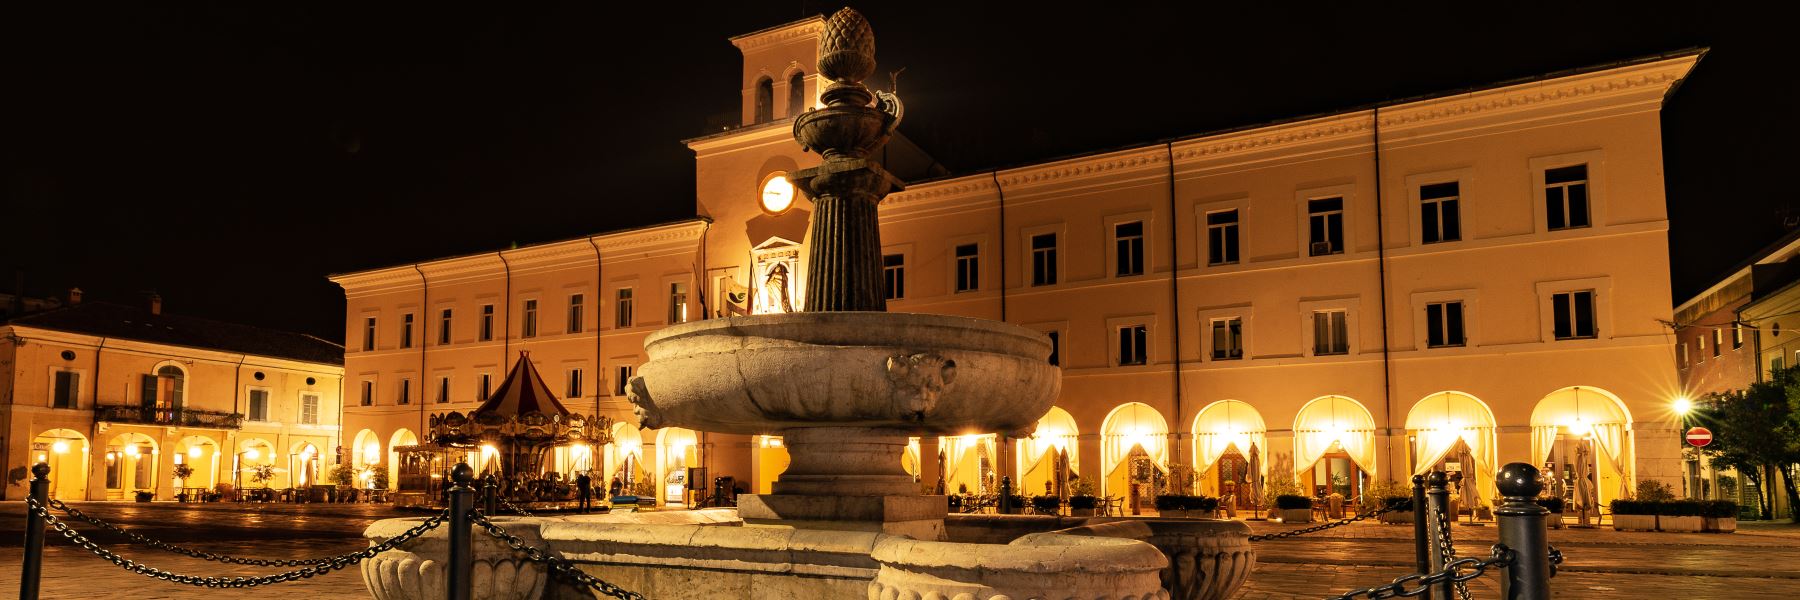 La fontana di Piazza Garibaldi